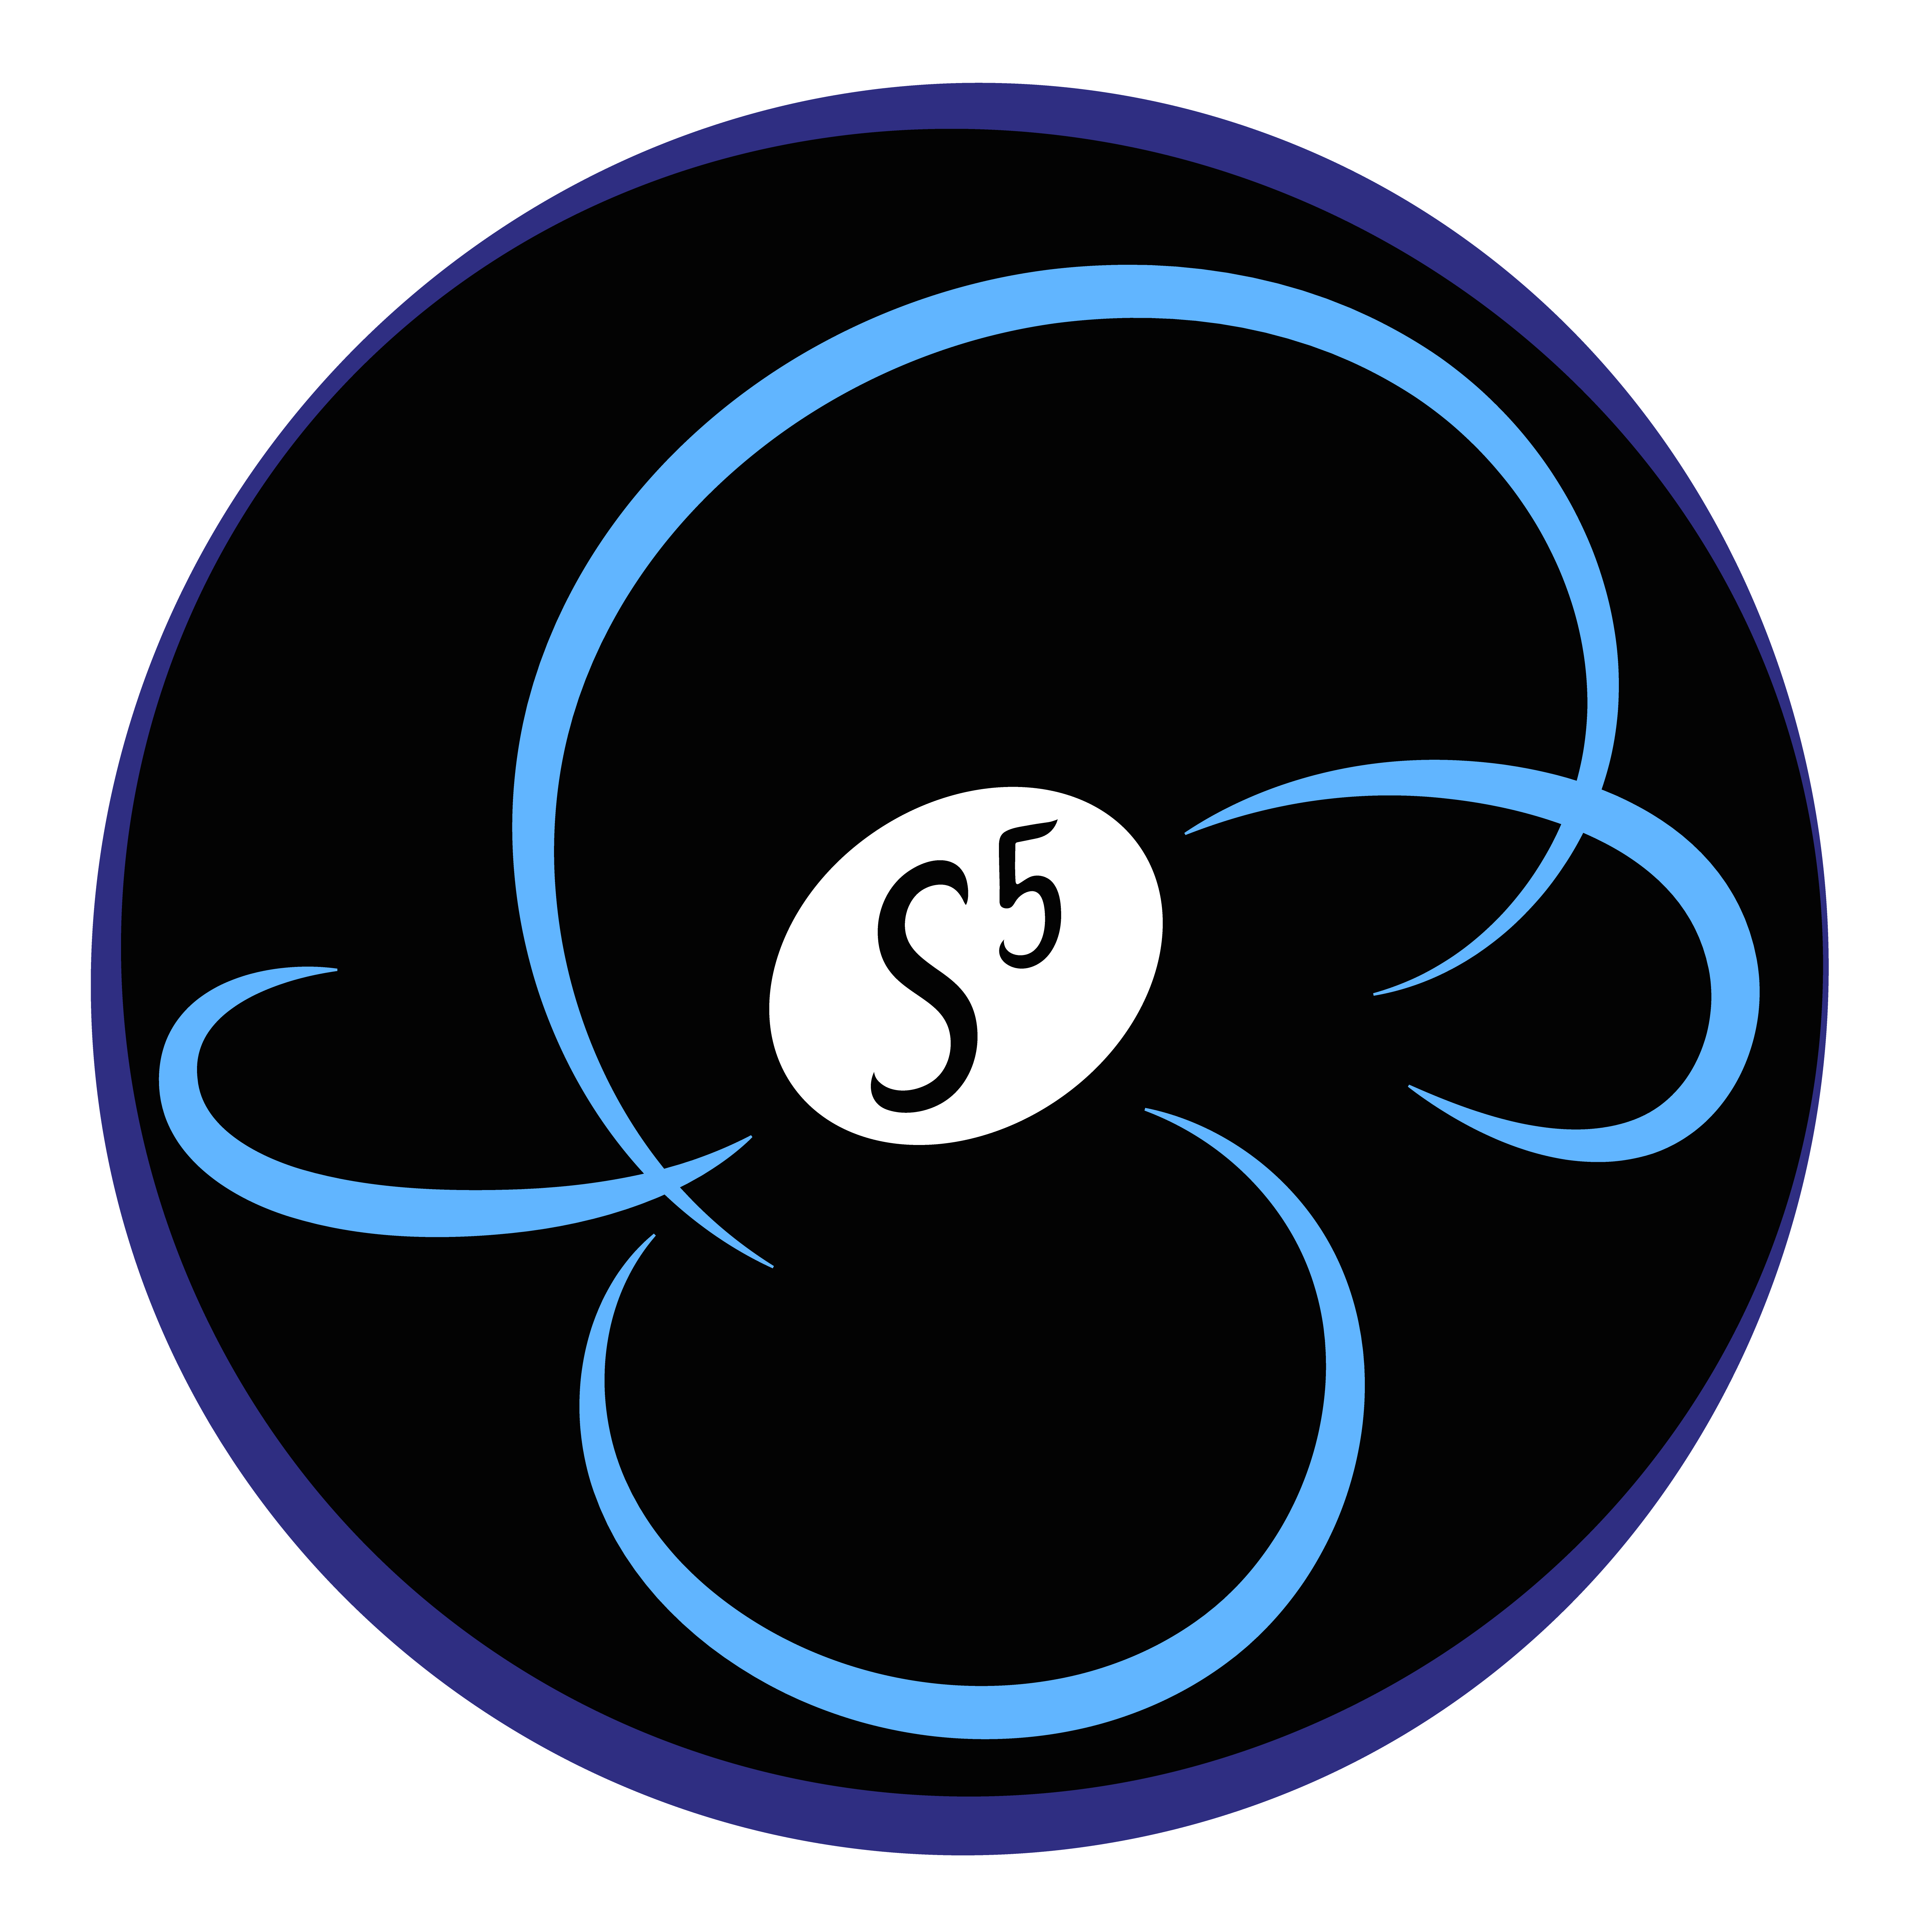 S⁵ logo